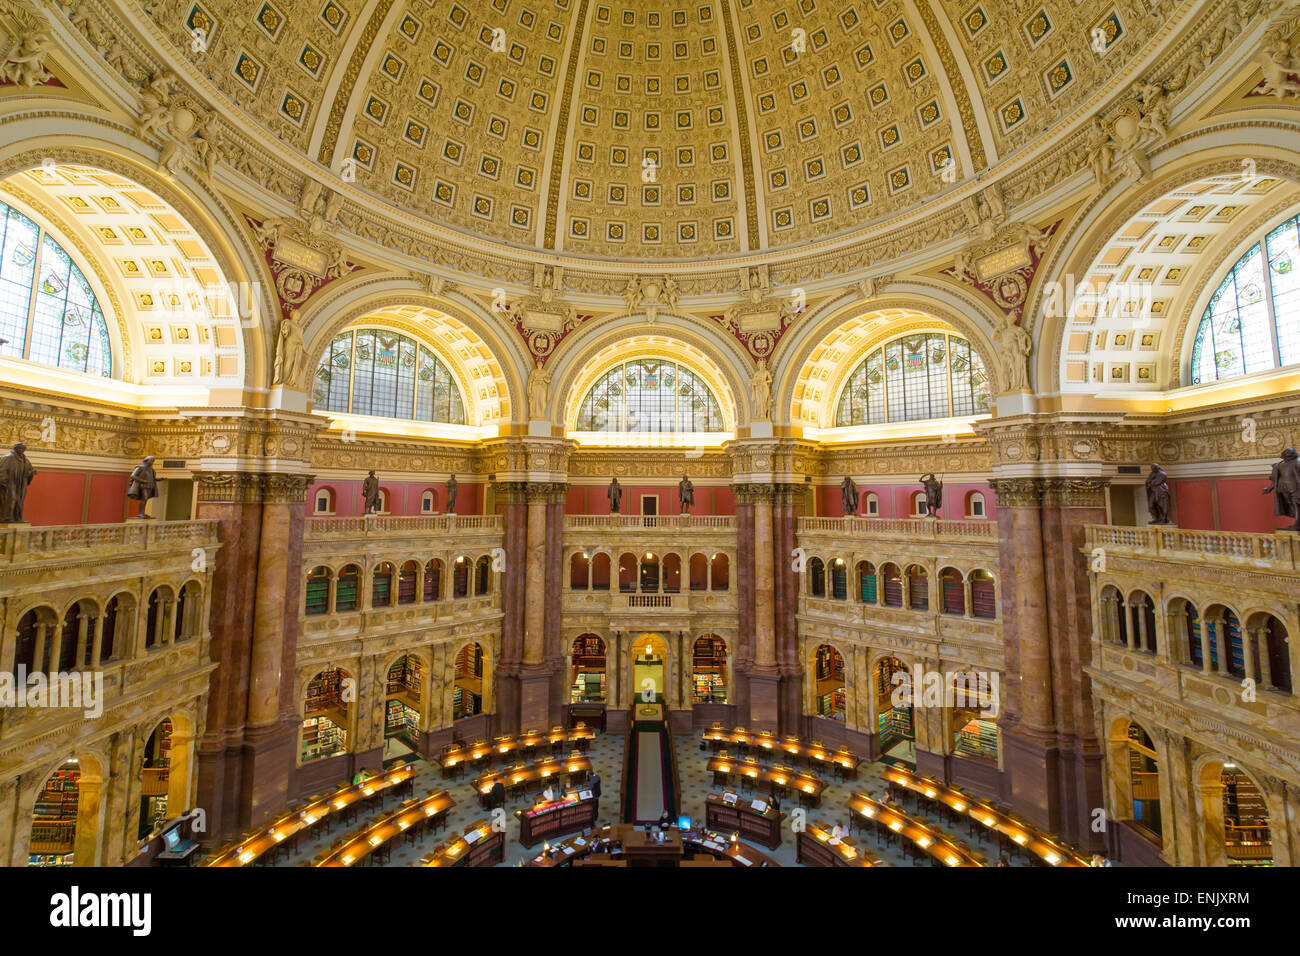 Le grand hall du bâtiment Thomas Jefferson, Bibliothèque du Congrès, Washington DC, États-Unis d'Amérique, Amérique du Nord Banque D'Images